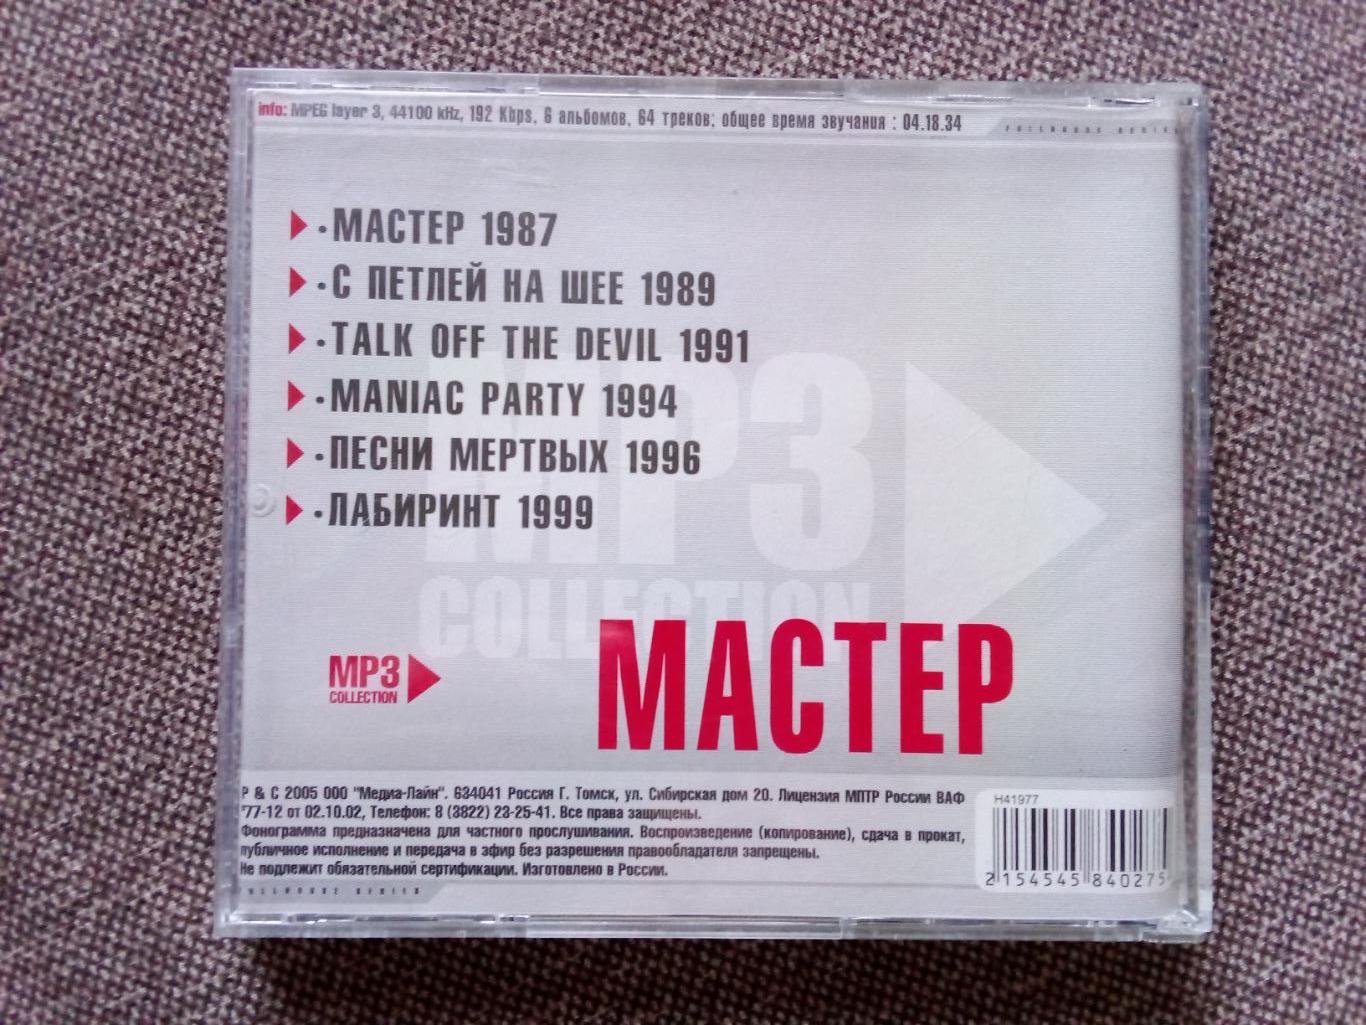 CD MP - 3 диск : группа Мастер 1987 - 1999 гг. (6 альбомов) лицензия (Метал) 1